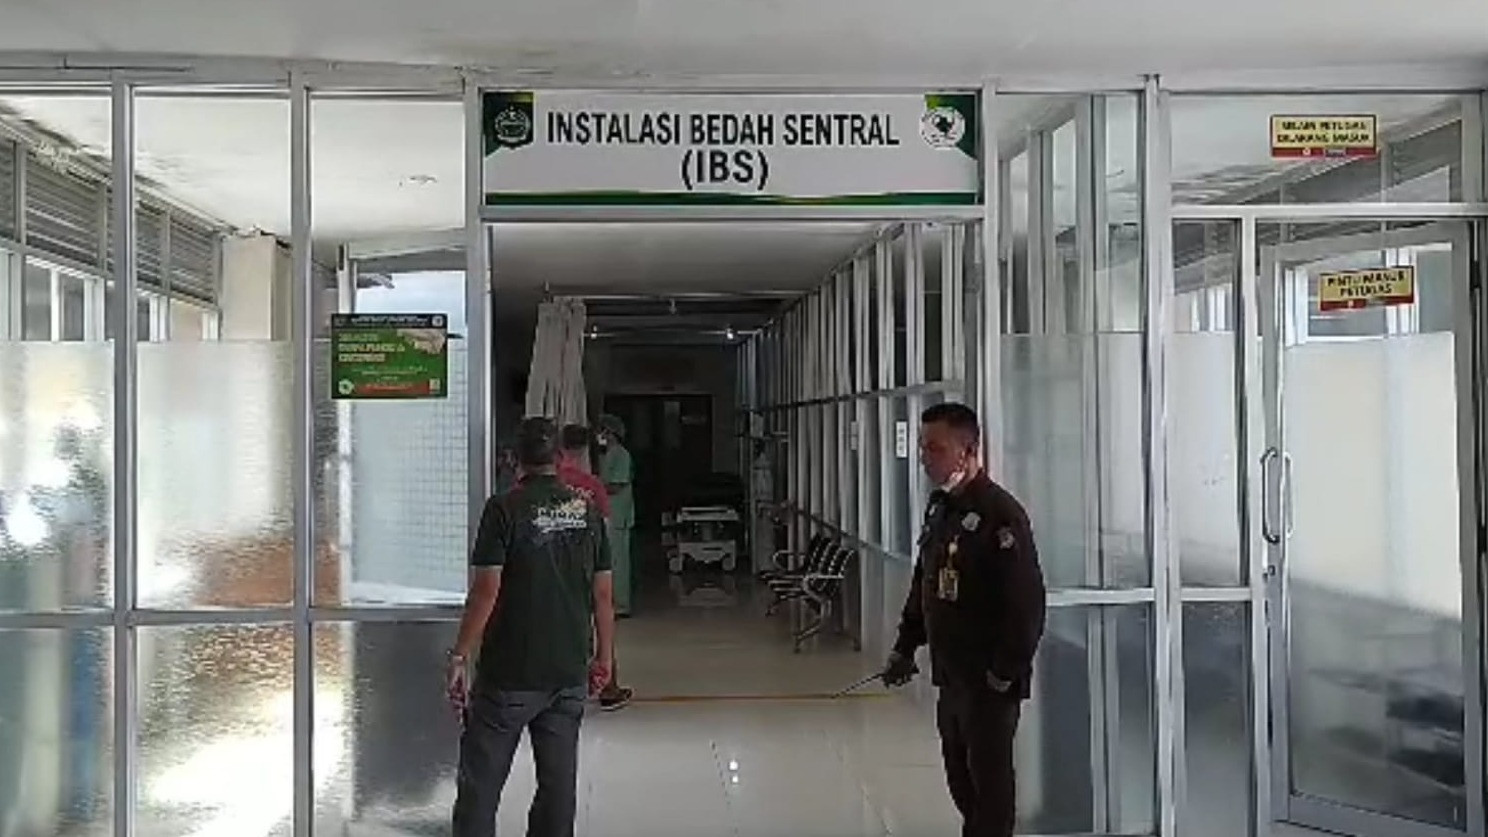 Operasi pemisahan kembar siam berkaki empat, Muhammad Karunia (9 bulan), sedang berlangsung di Rumah Sakit Umum Daerah Nusa Tenggara Barat (RSUD NTB).